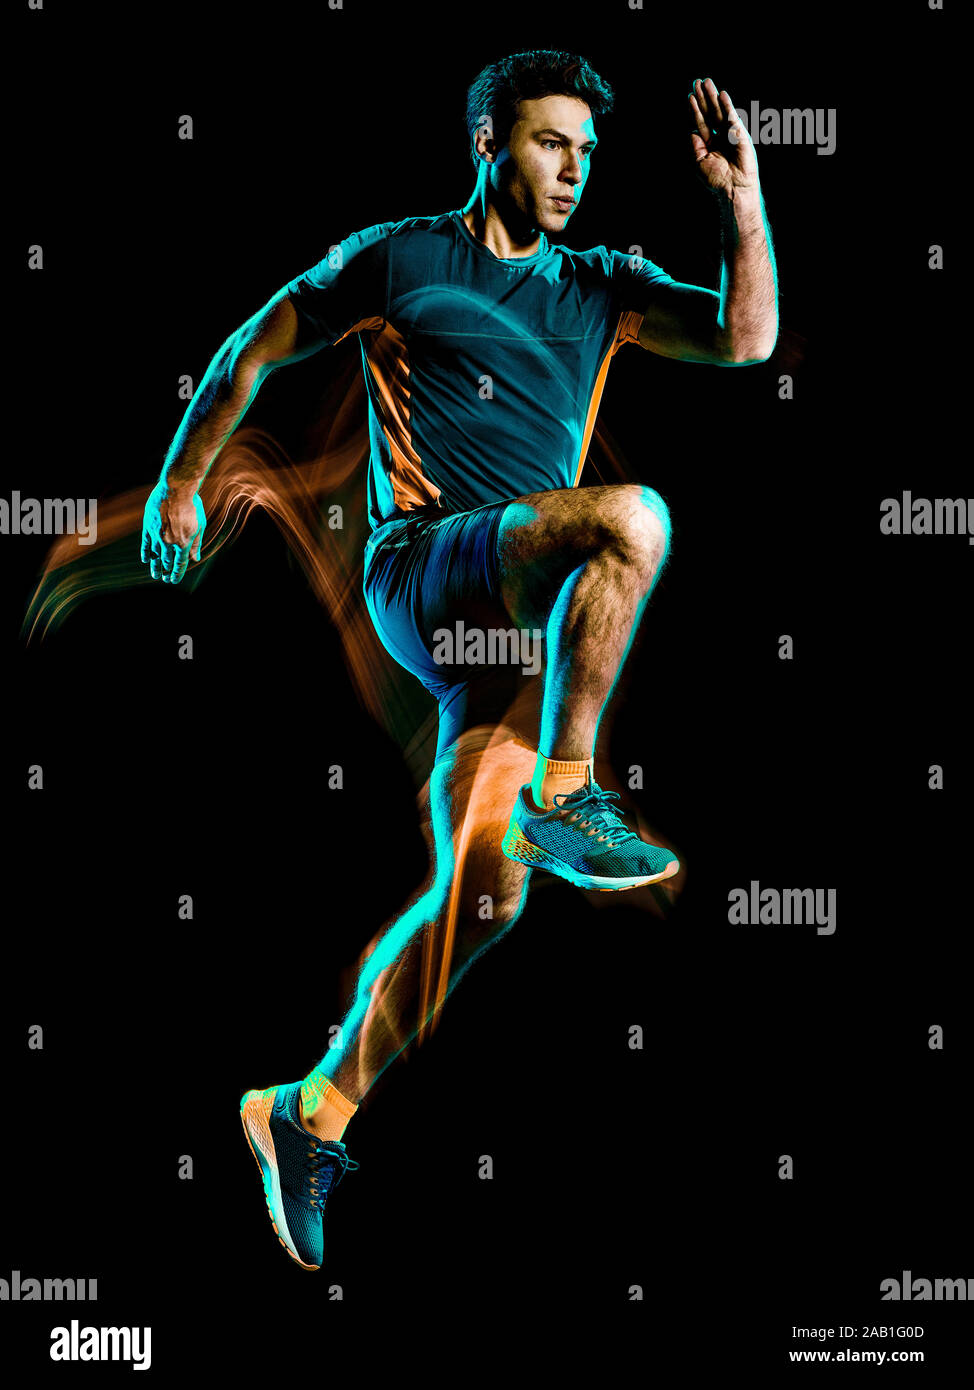 Uno caucásico runner ejecutando emparejador Hombre Footing velocidad de pintado de luz efecto aislado sobre fondo negro Foto de stock